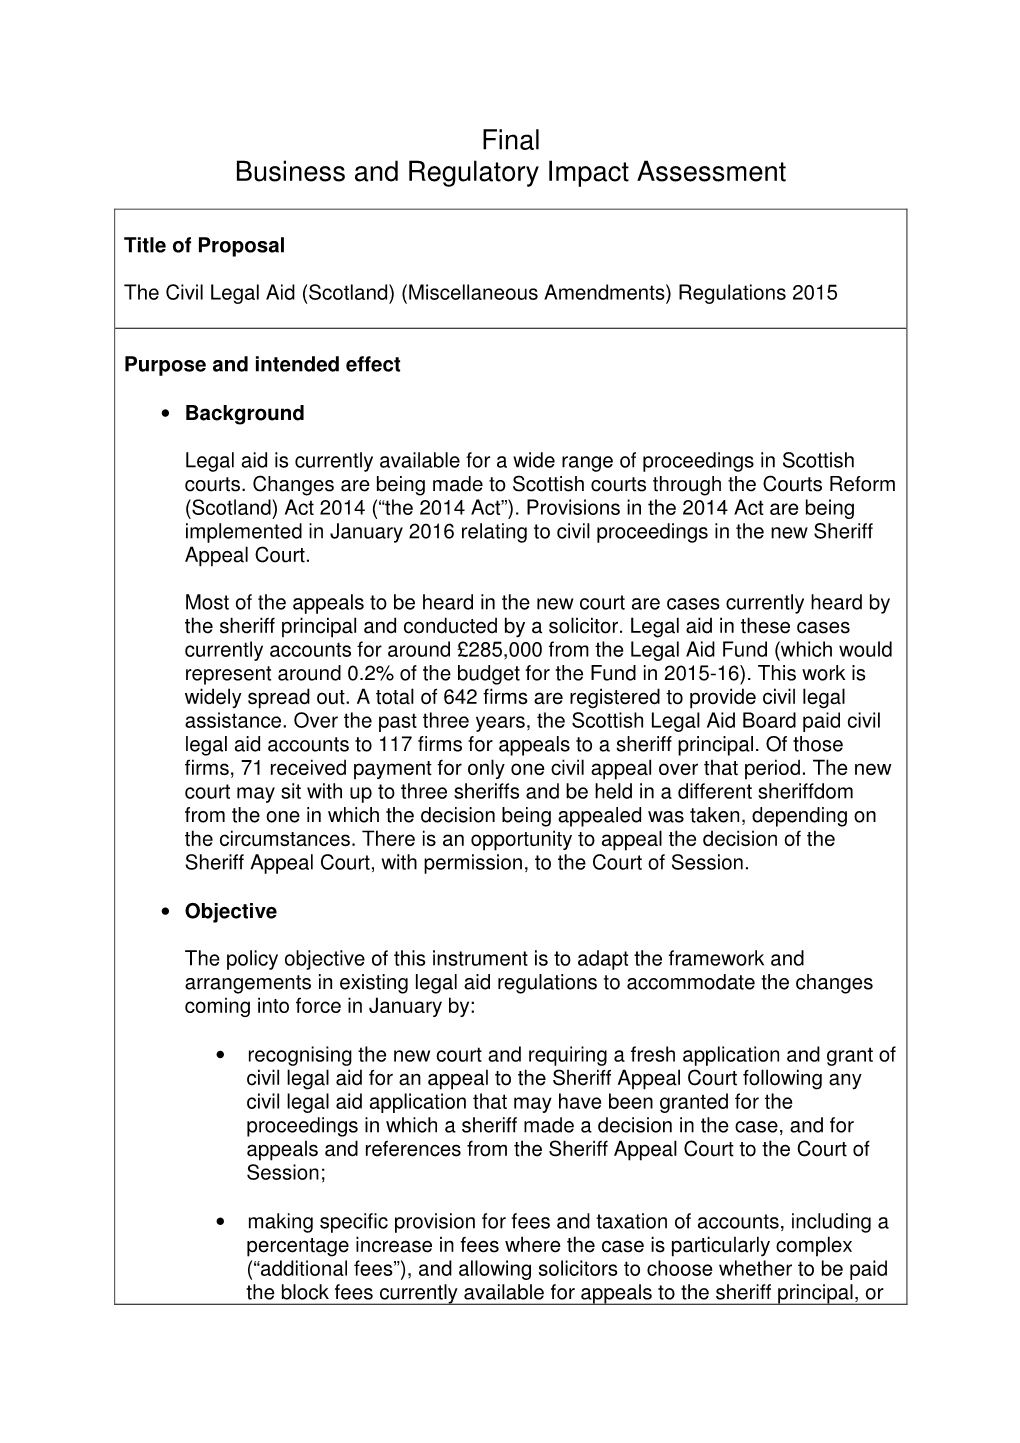 The Civil Legal Aid (Scotland) (Miscellaneous Amendments) Regulations 2015